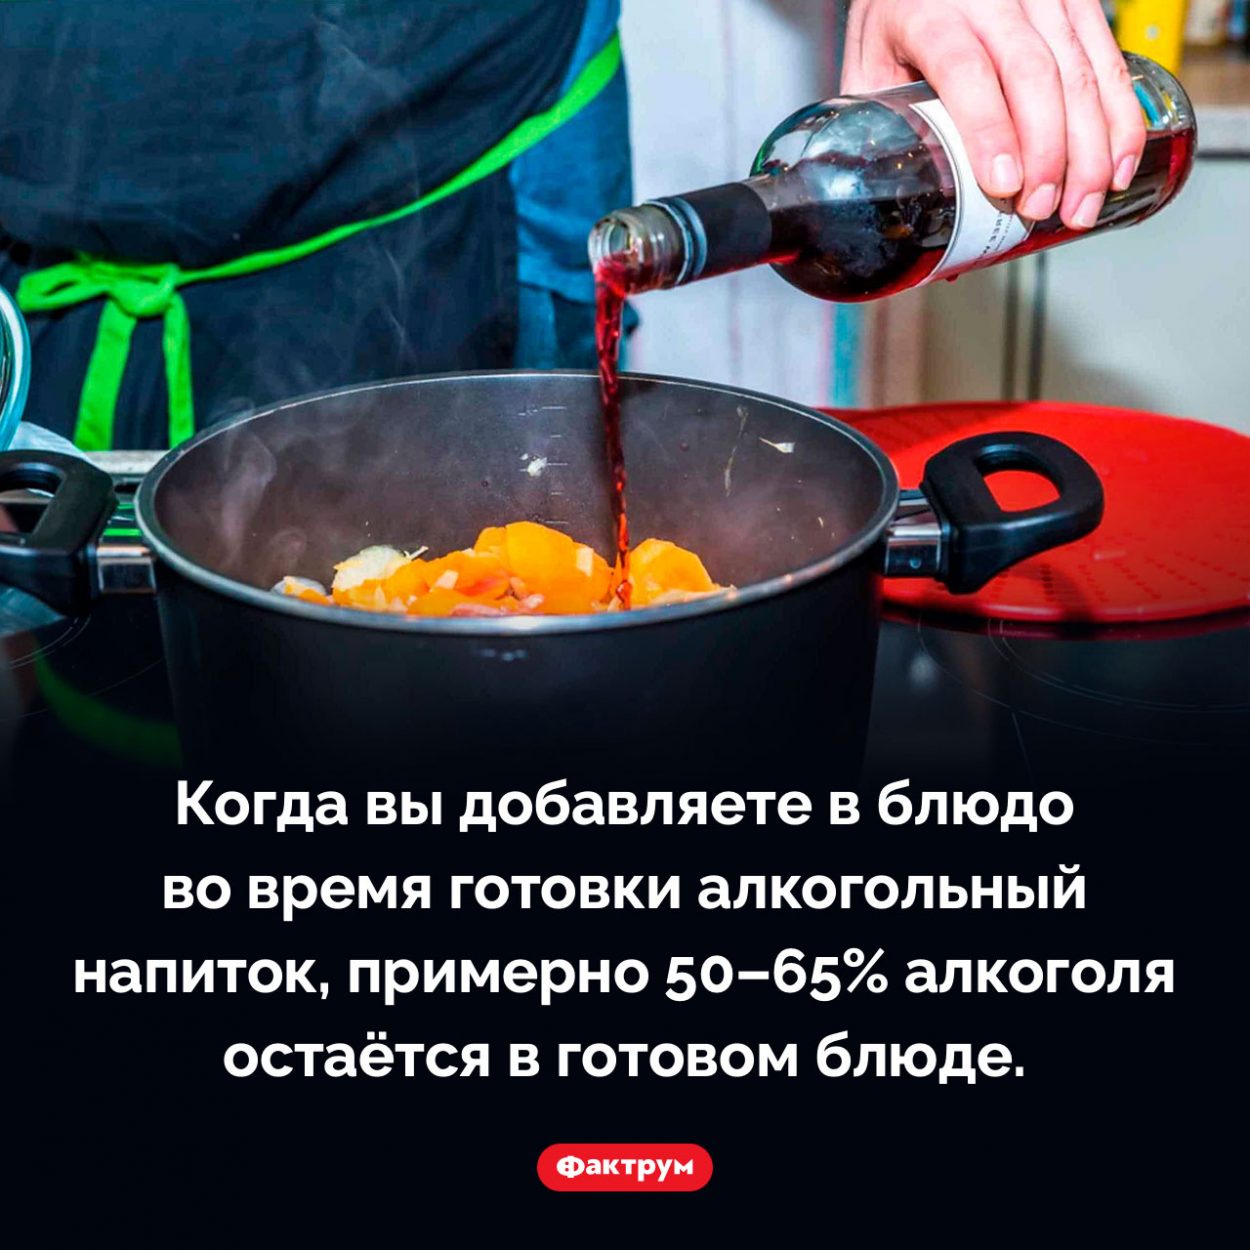 Добавление алкоголя в блюдо при готовке. Когда вы добавляете в блюдо во время готовки алкогольный напиток, примерно 50–65% алкоголя остаётся в готовом блюде.